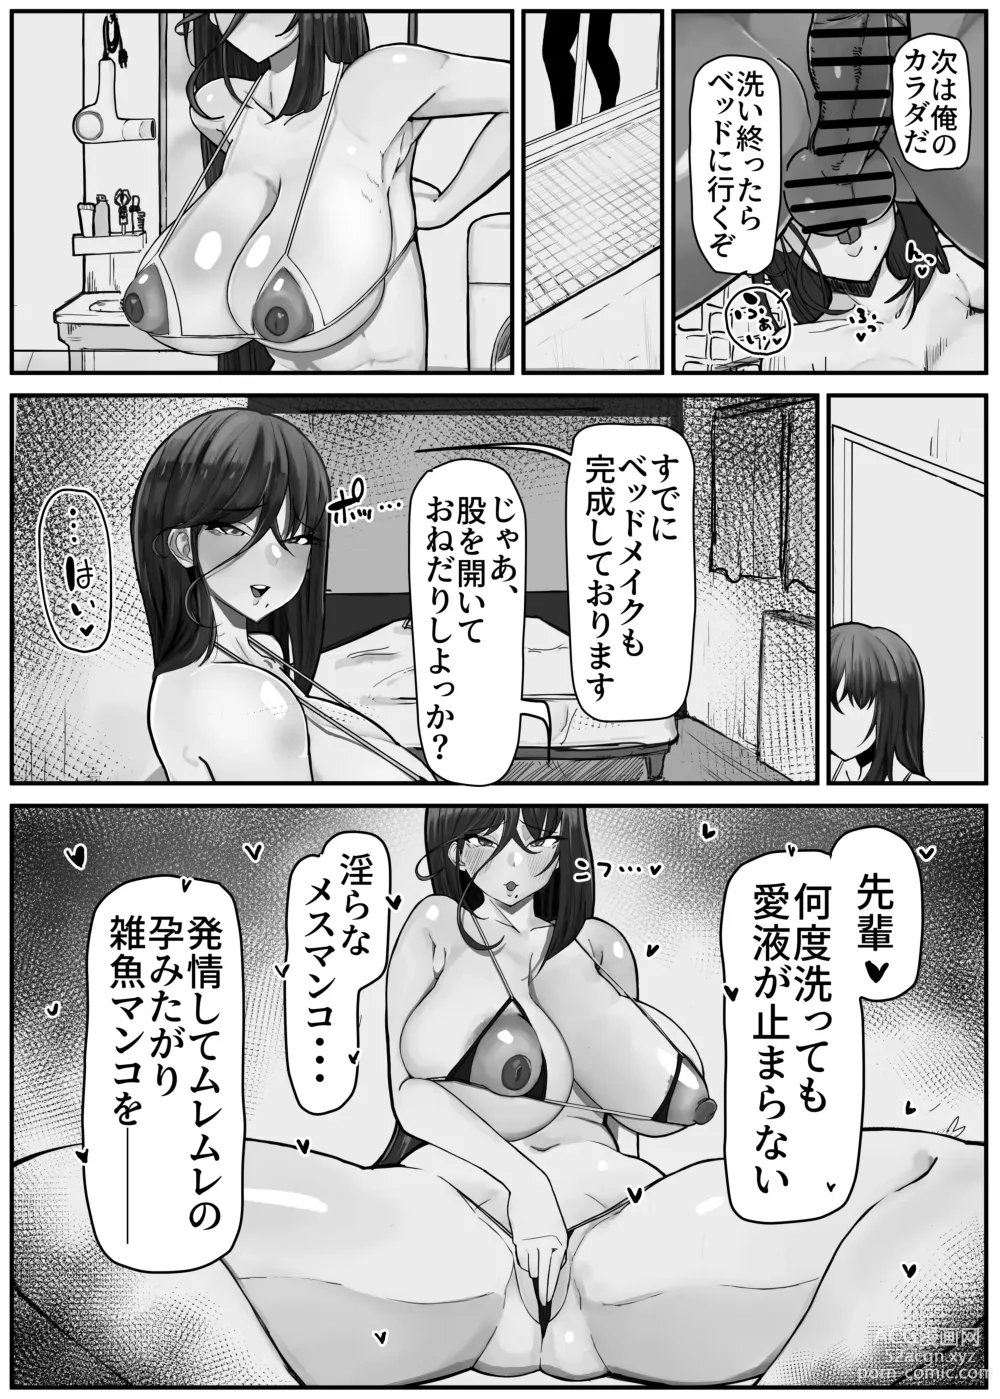 Page 14 of doujinshi Hikiyoseru chi tsunagi tomeru kusari